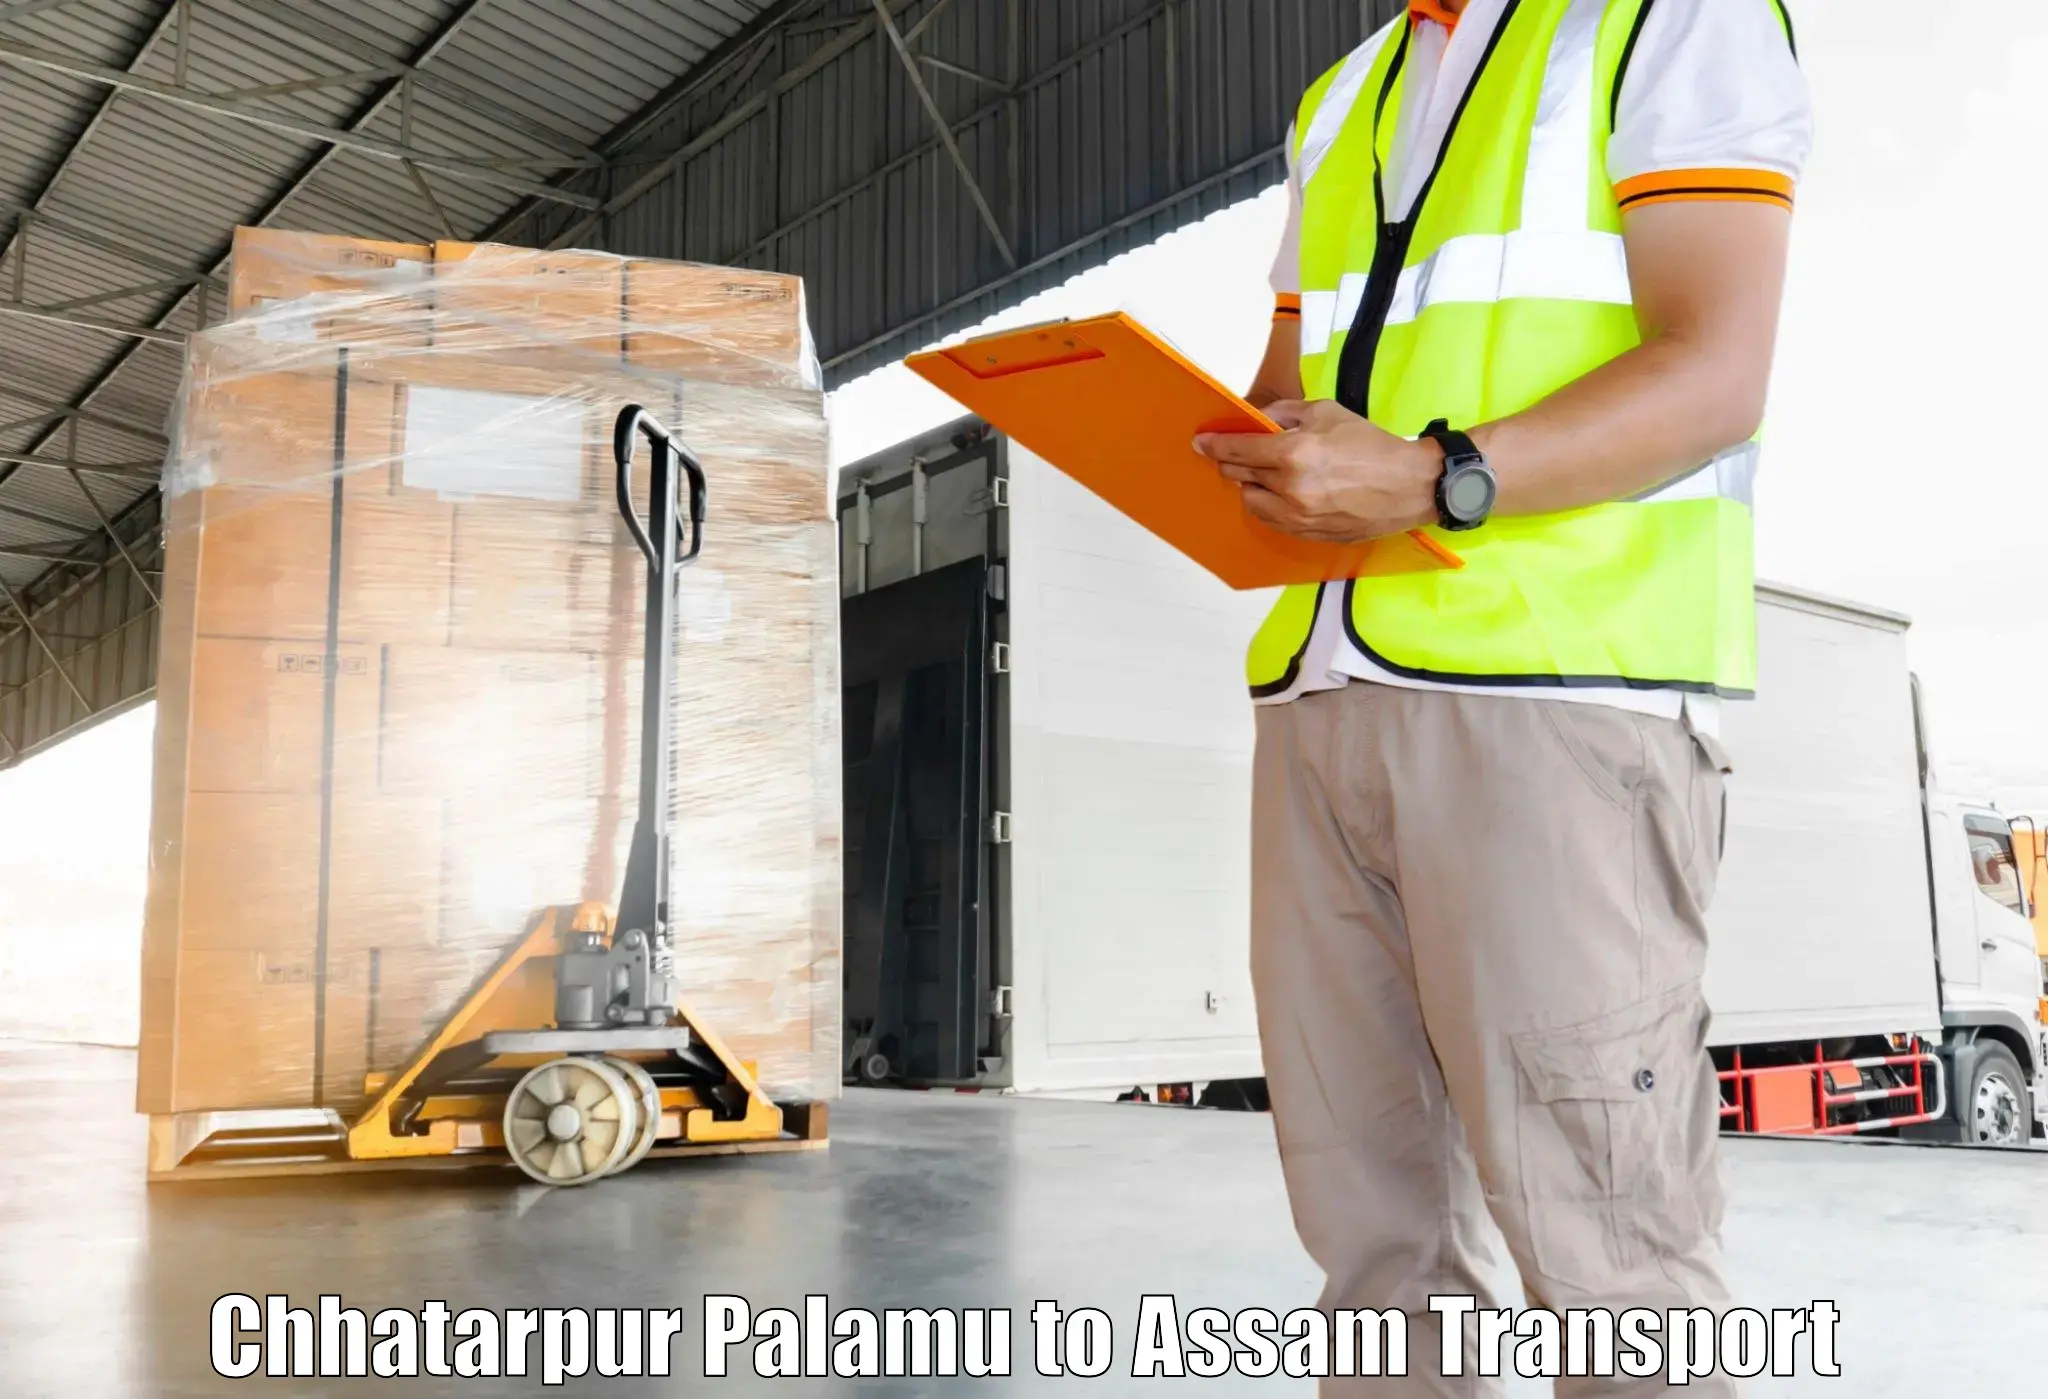 Road transport online services Chhatarpur Palamu to Badarpur Karimganj